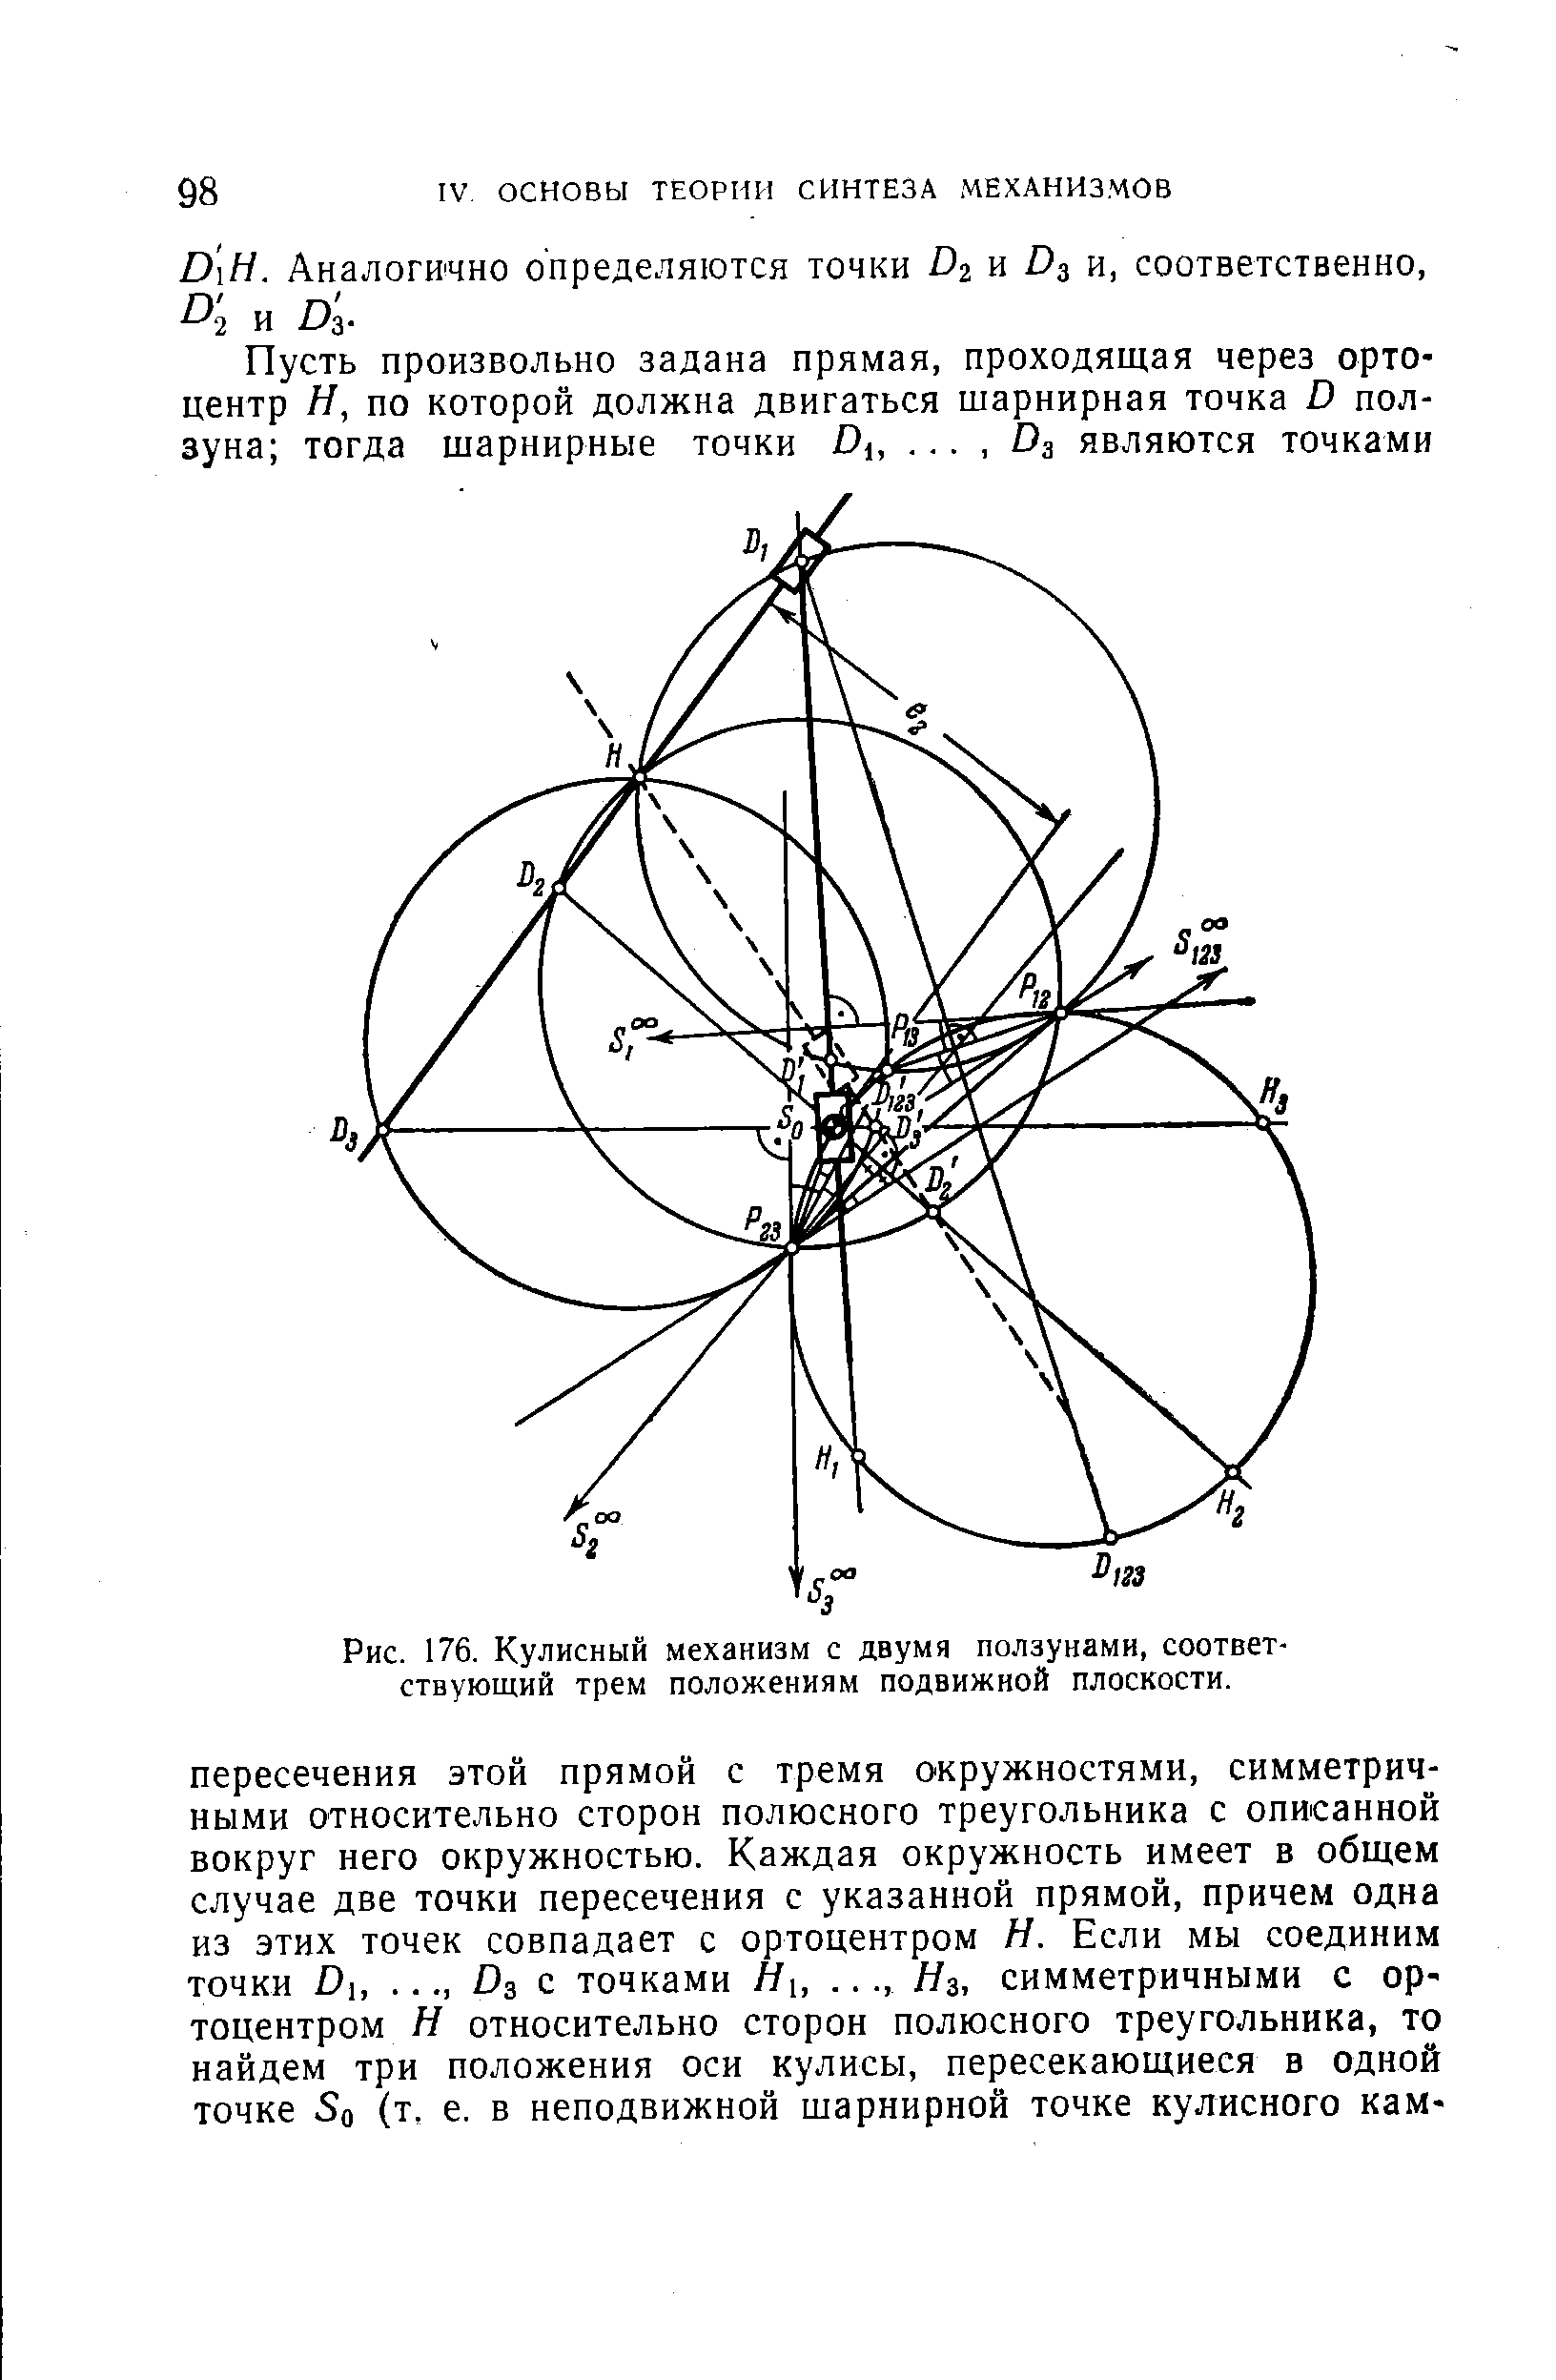 Рис. 176. Кулисный механизм с двумя ползунами, соответствующий трем положениям подвижной плоскости.
